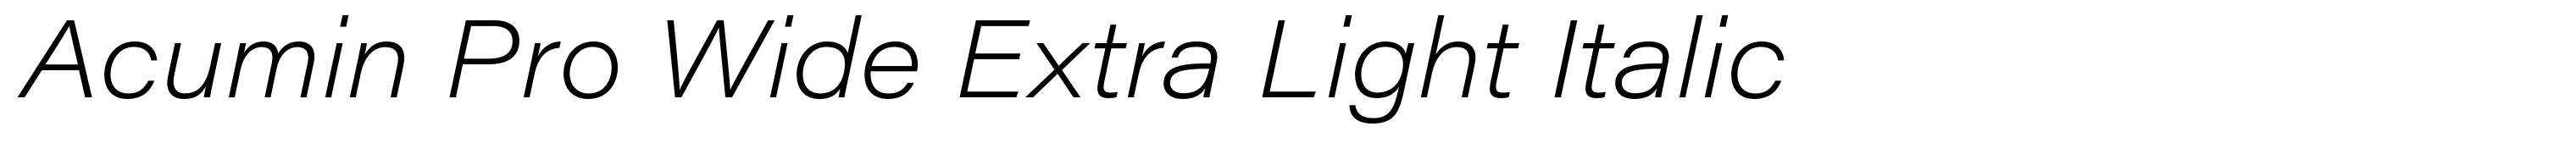 Acumin Pro Wide Extra Light Italic